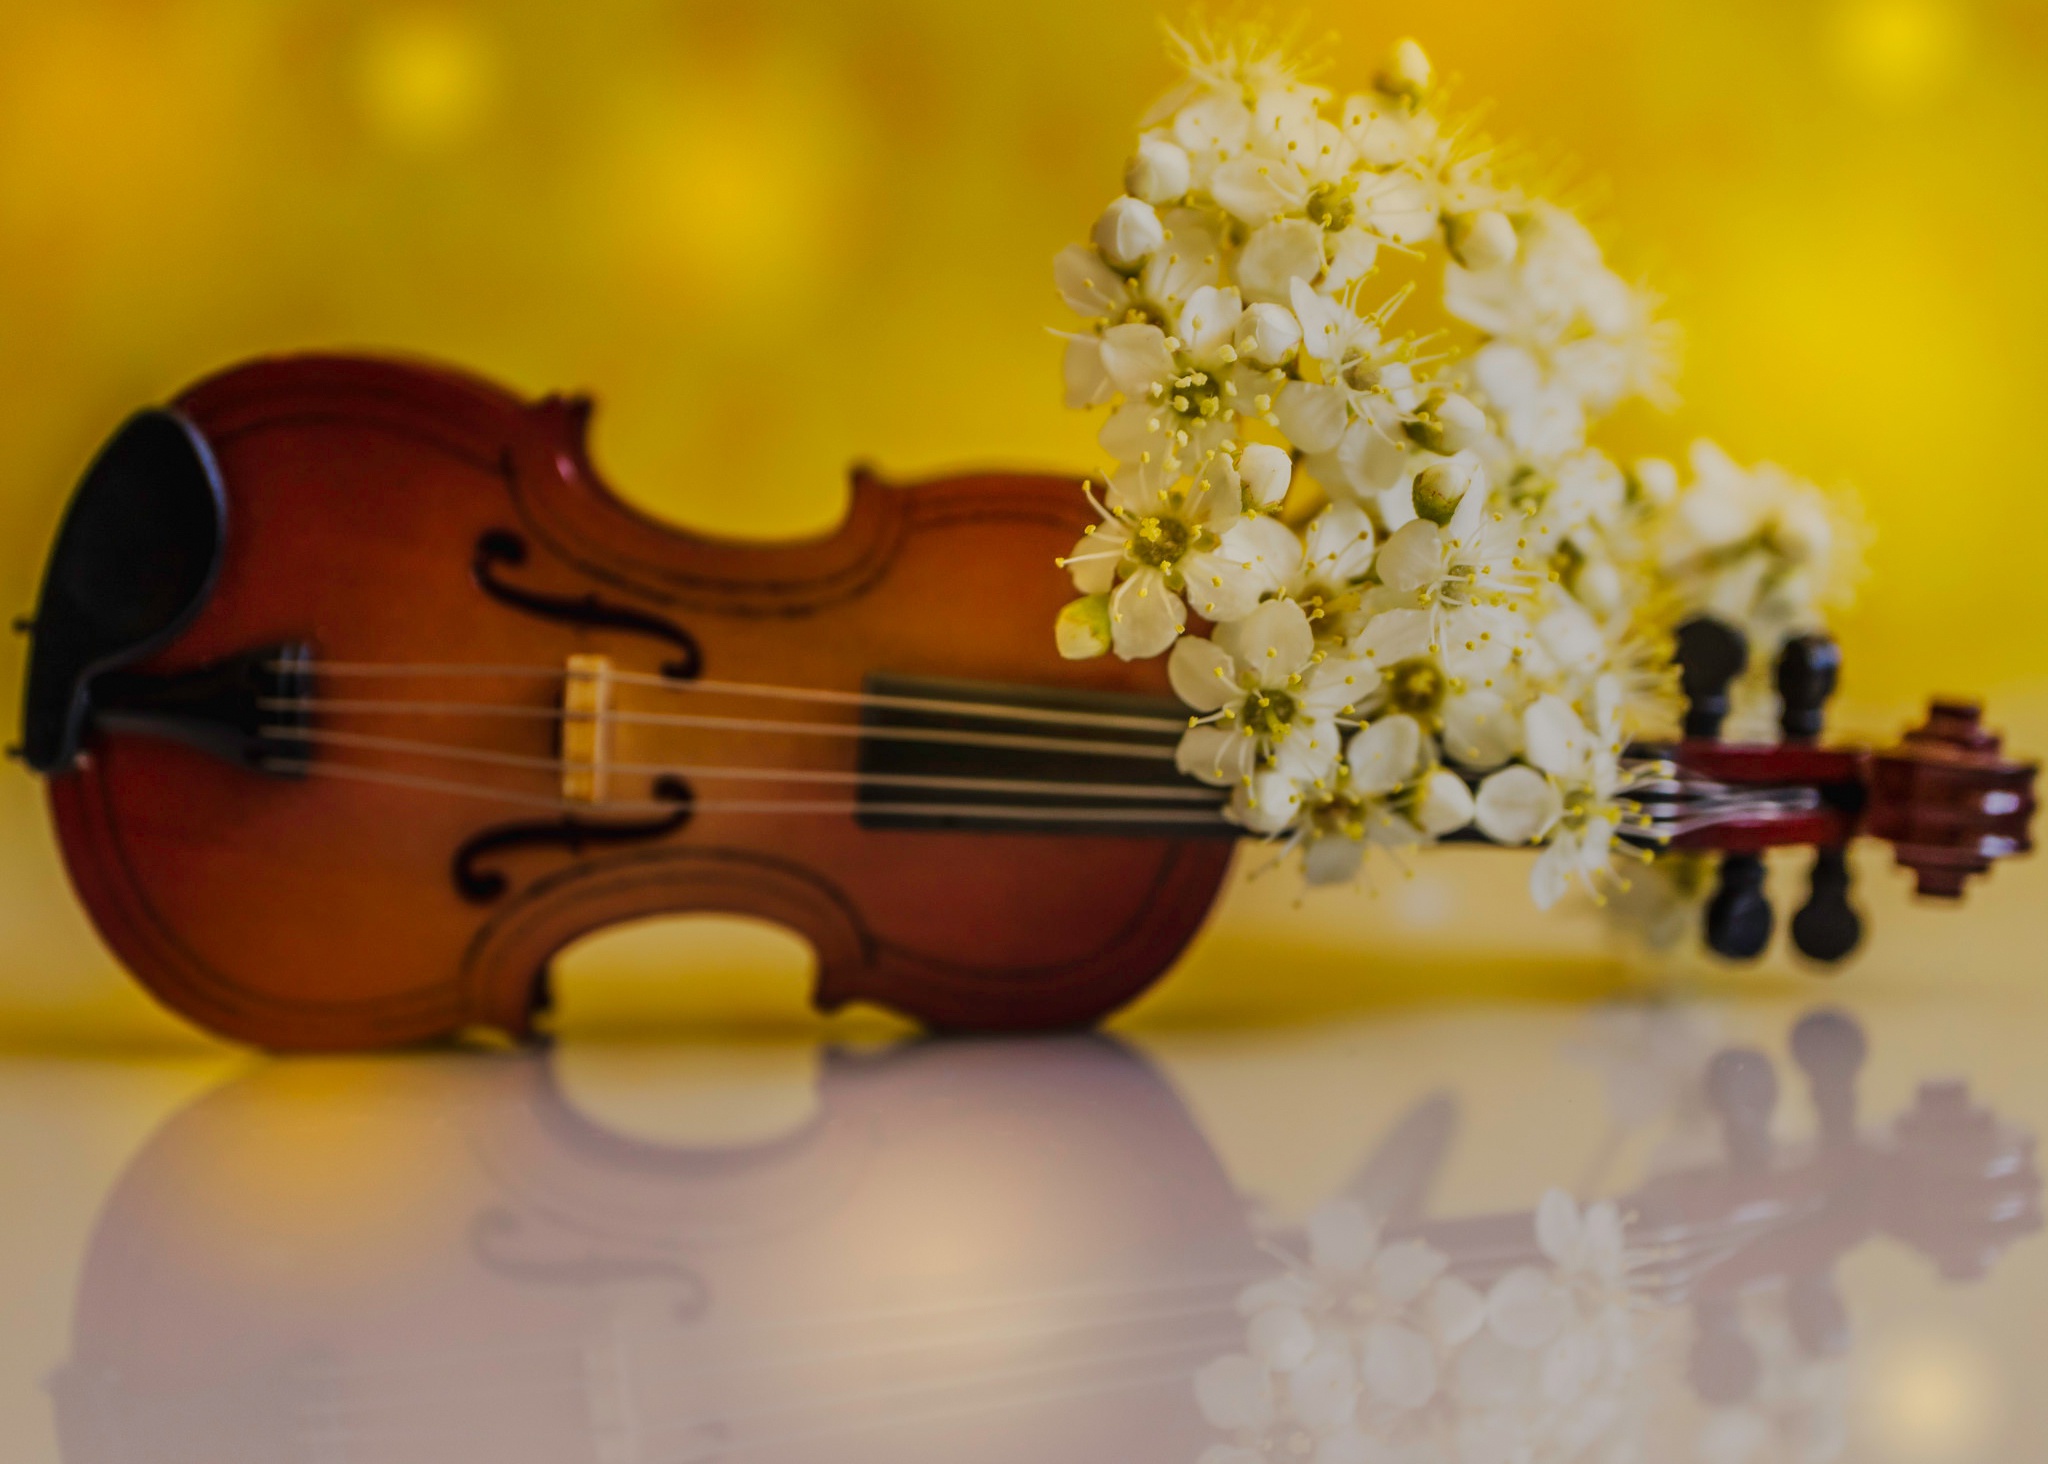 Песни для весеннего настроения. Скрипка и цветы. Красивые музыкальные инструменты. Музыкальные инструменты и цветы. Скрипка с цветами.